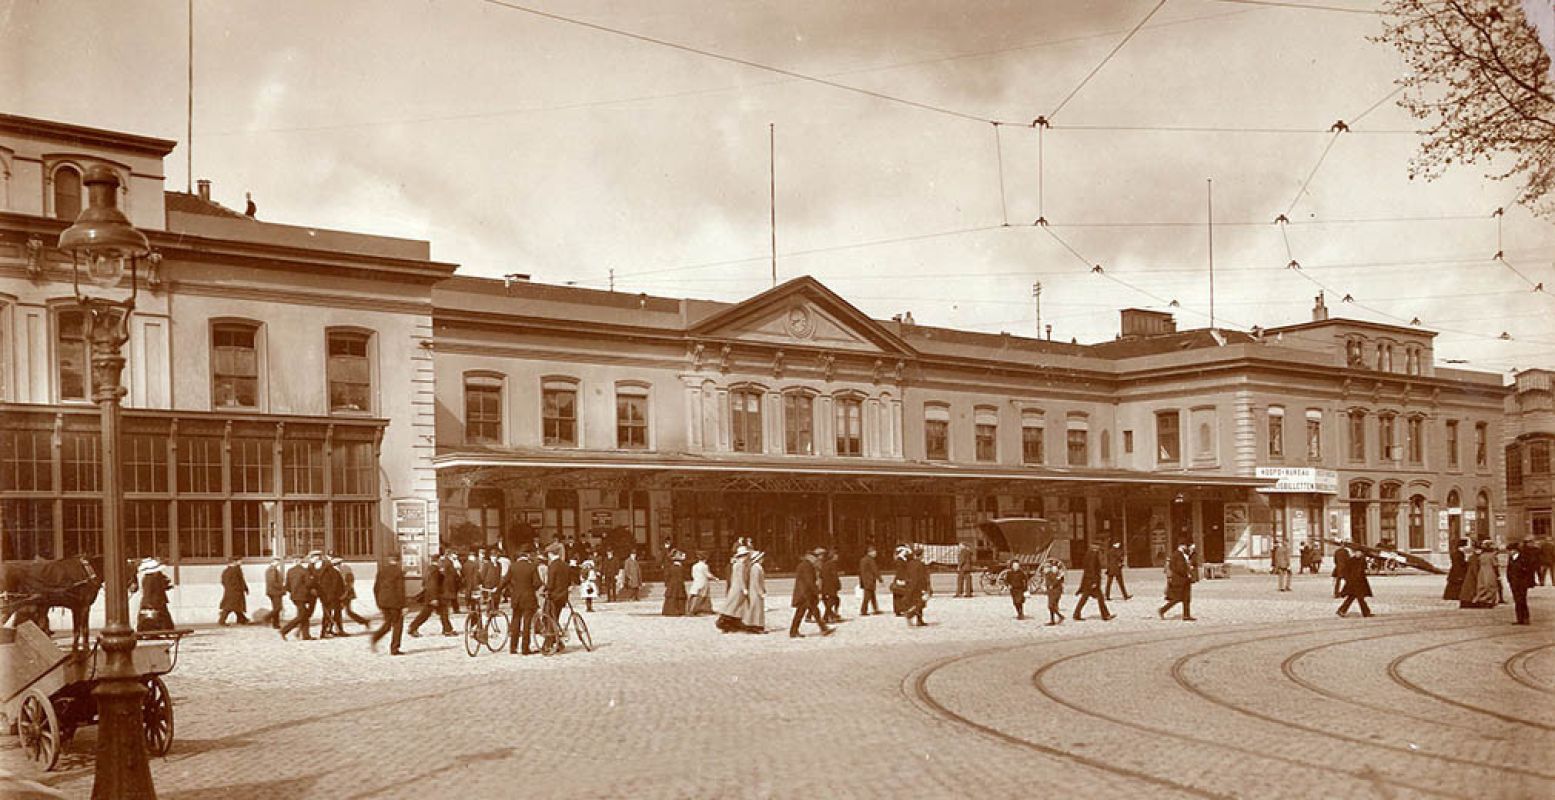 Het stationsplein van Utrecht Centraal in 1912. Links zie je nog een paard en wagen staan. Bron: Het Spoorwegmuseum.